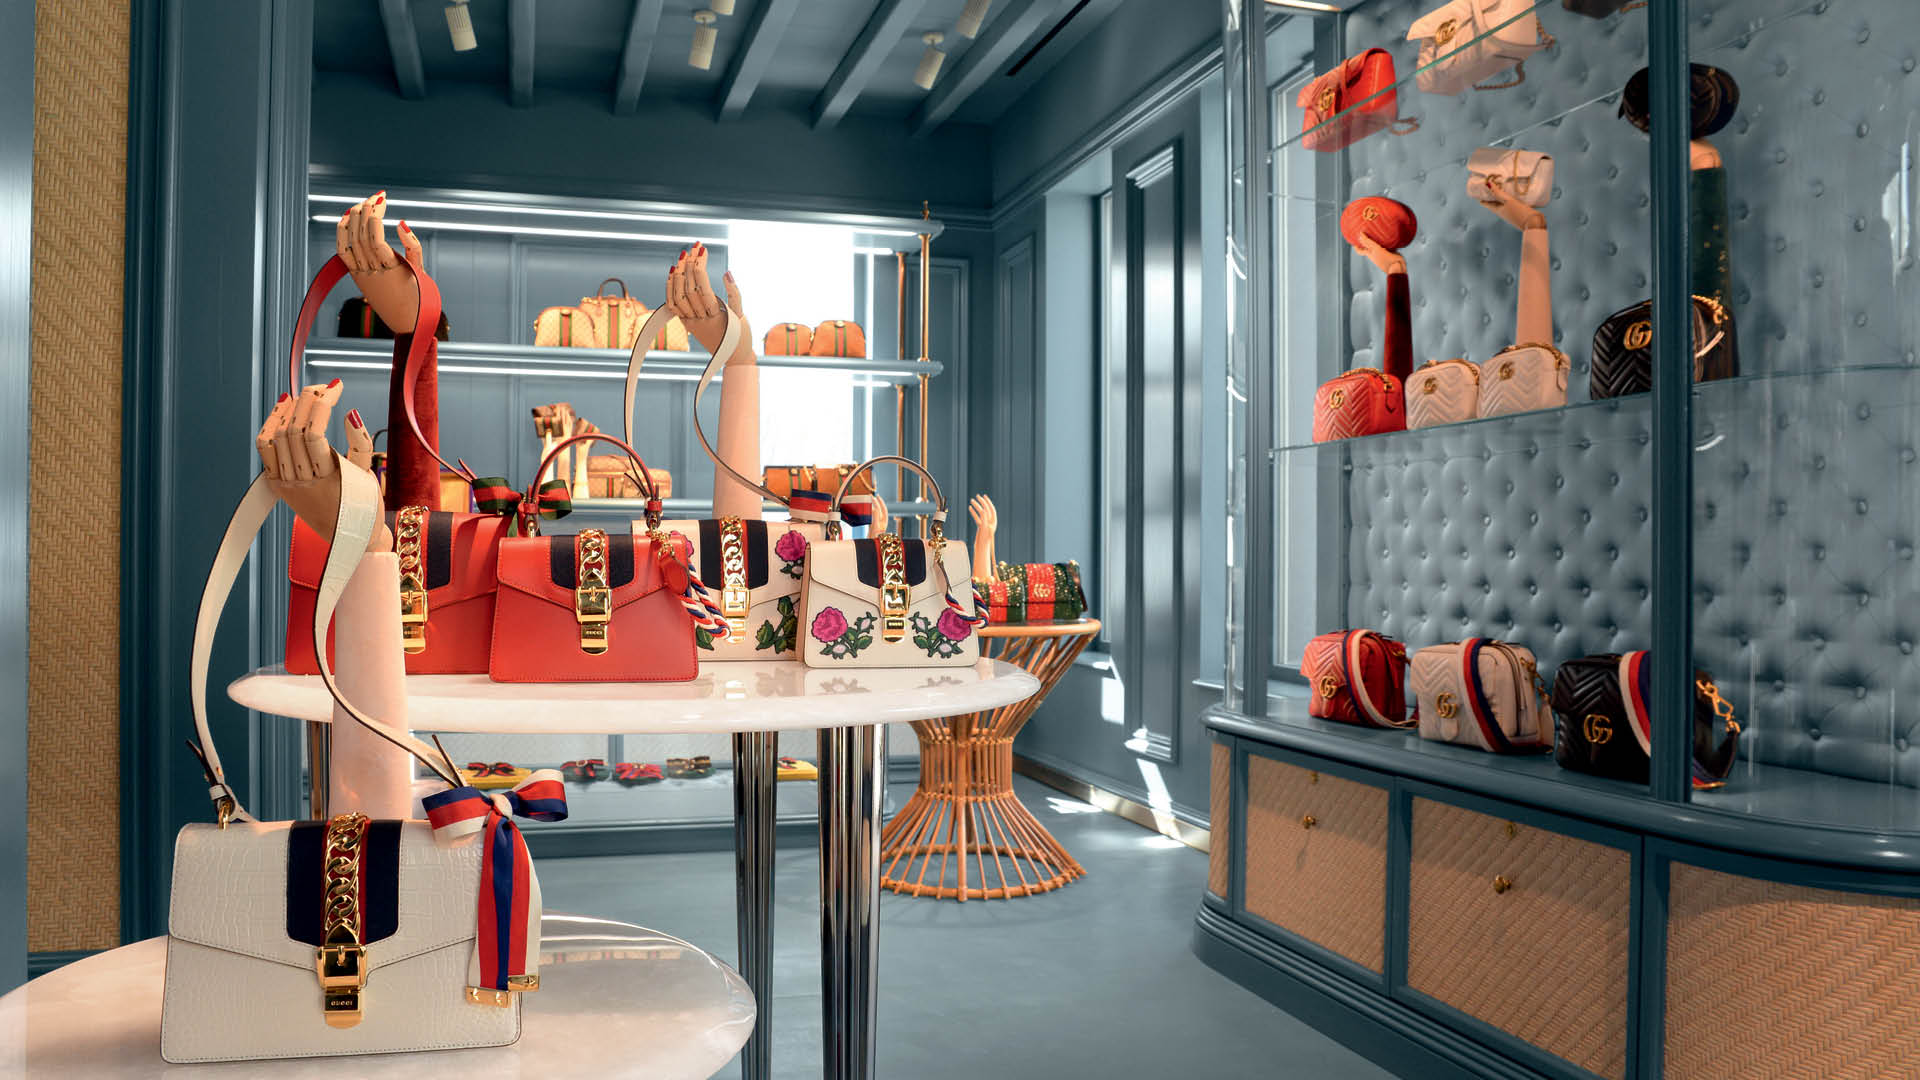 Louis Vuitton, Mykonos, Greece  Mykonos, Instagram, Home decor decals